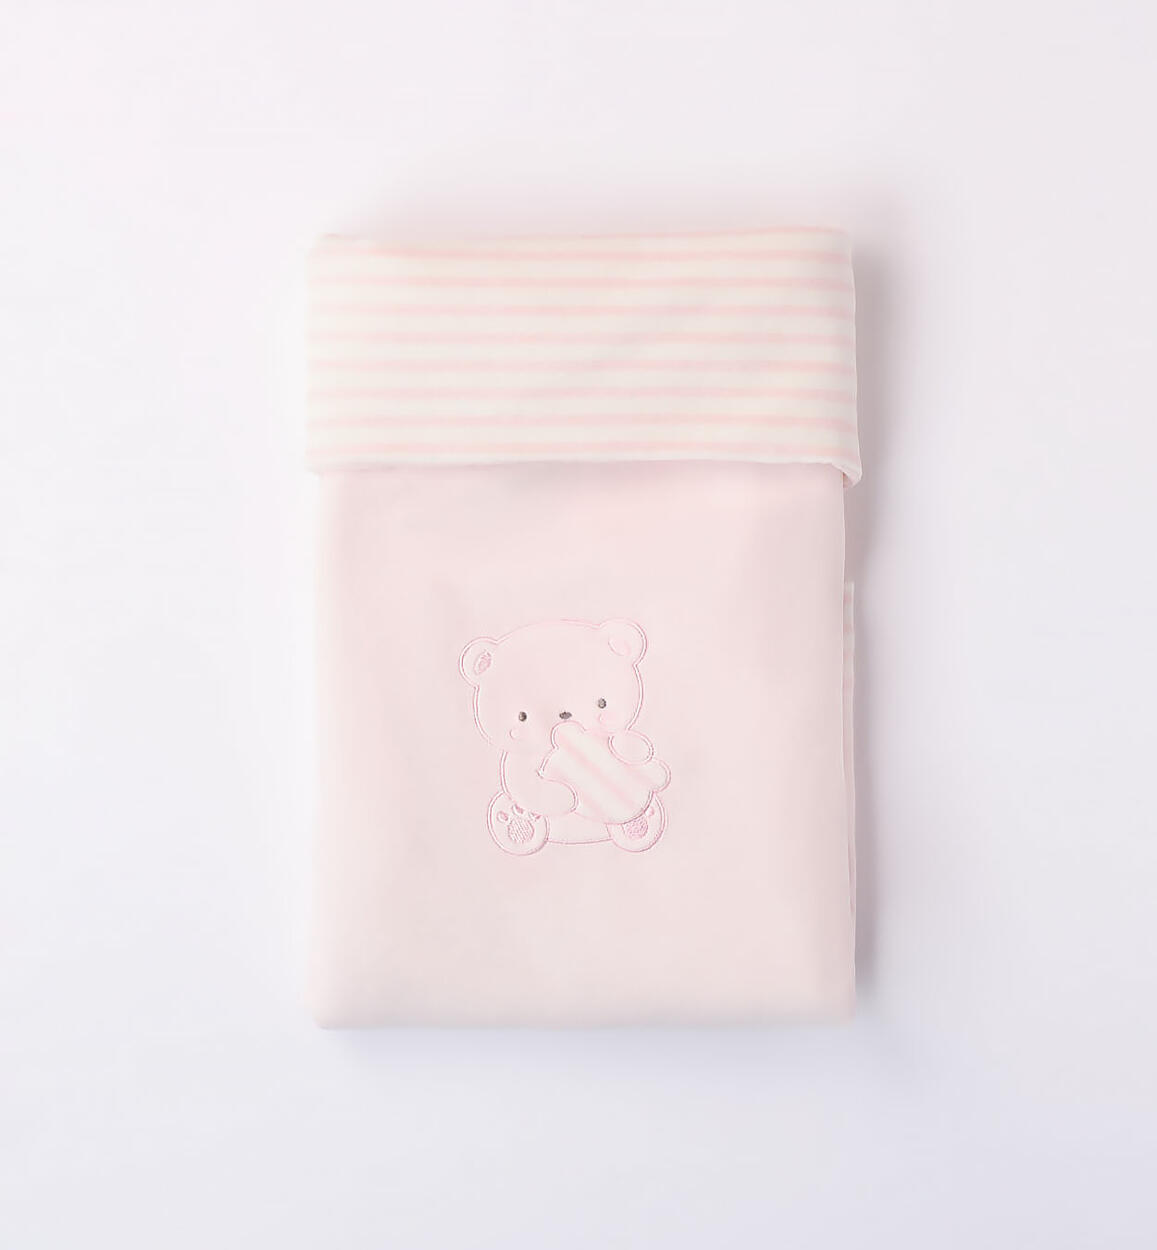 Copertina per neonato ROSA Minibanda